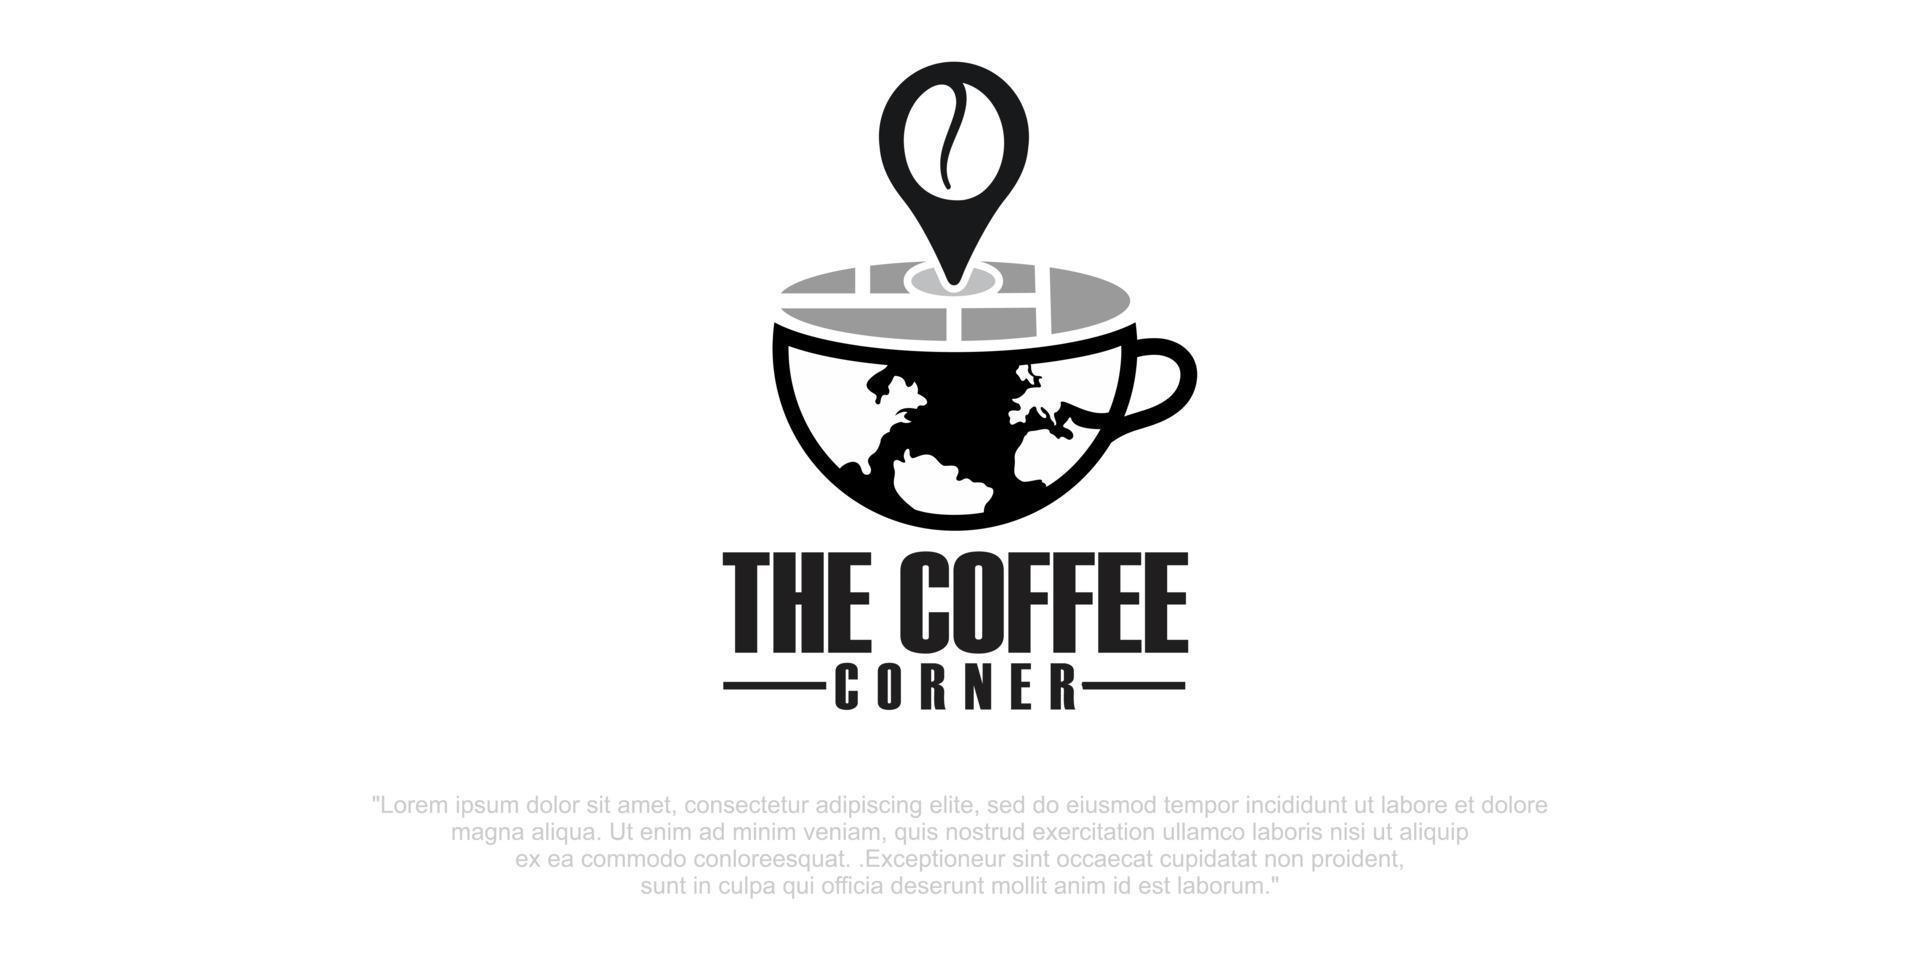 café do mundo do logotipo, xícara de café, espuma de café do mapa do mundo, identidade corporativa, ilustração, vetor